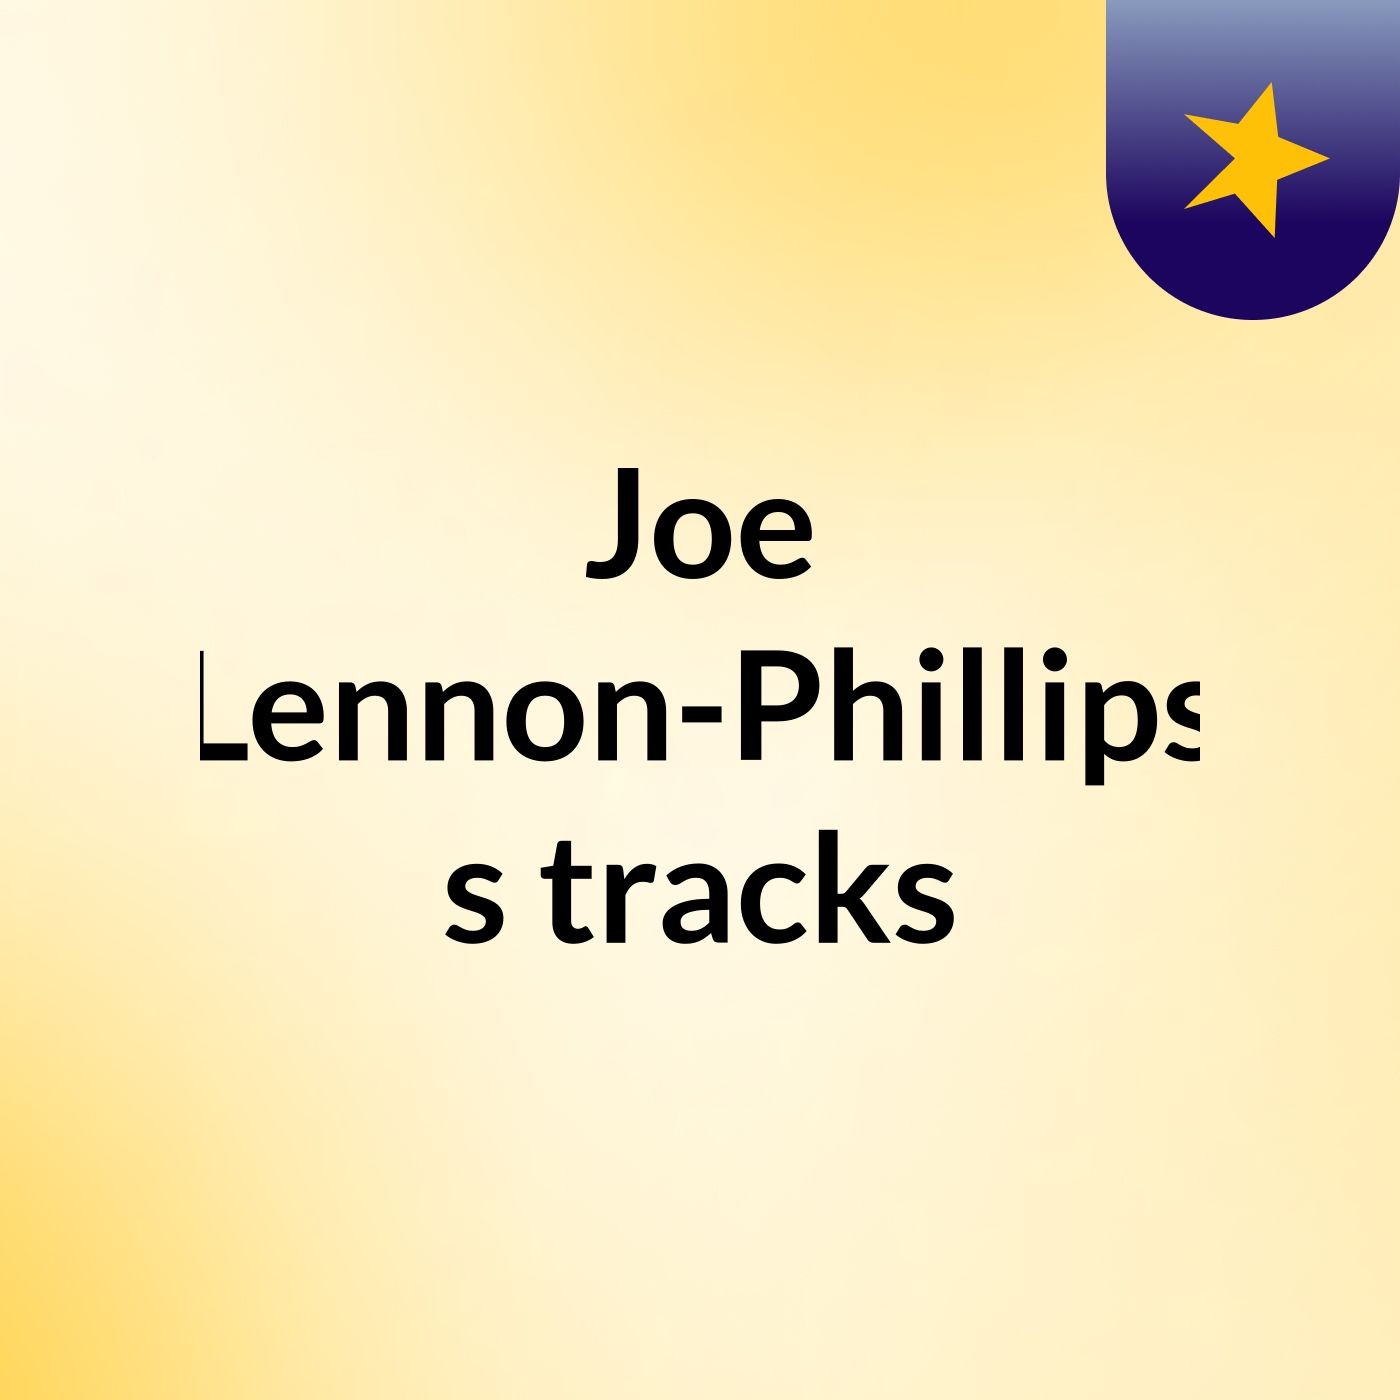 Joe Lennon-Phillips's tracks